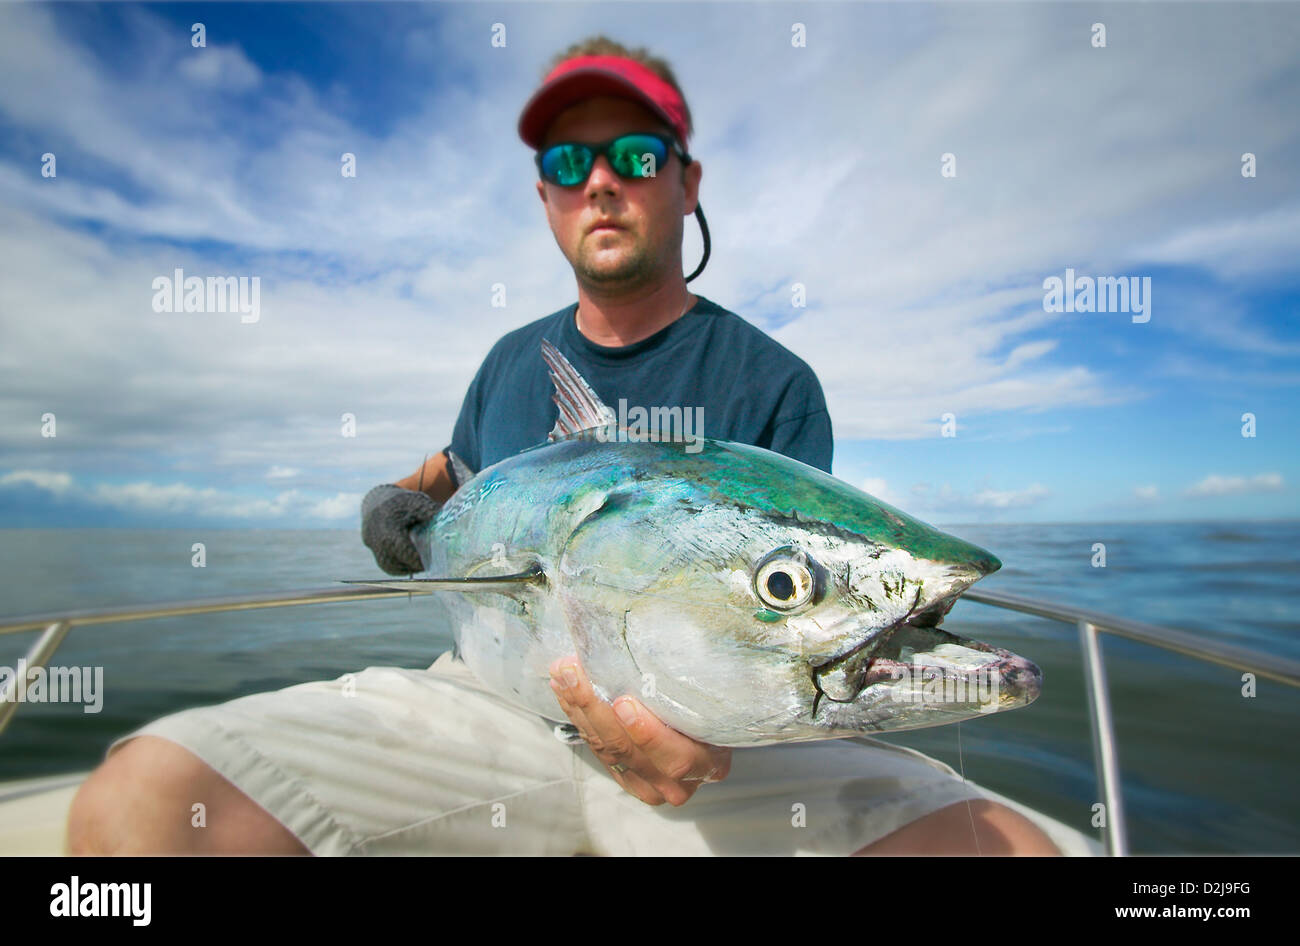 Man holding a false albacore tuna off the coast of north carolina; north carolina united states of america Stock Photo